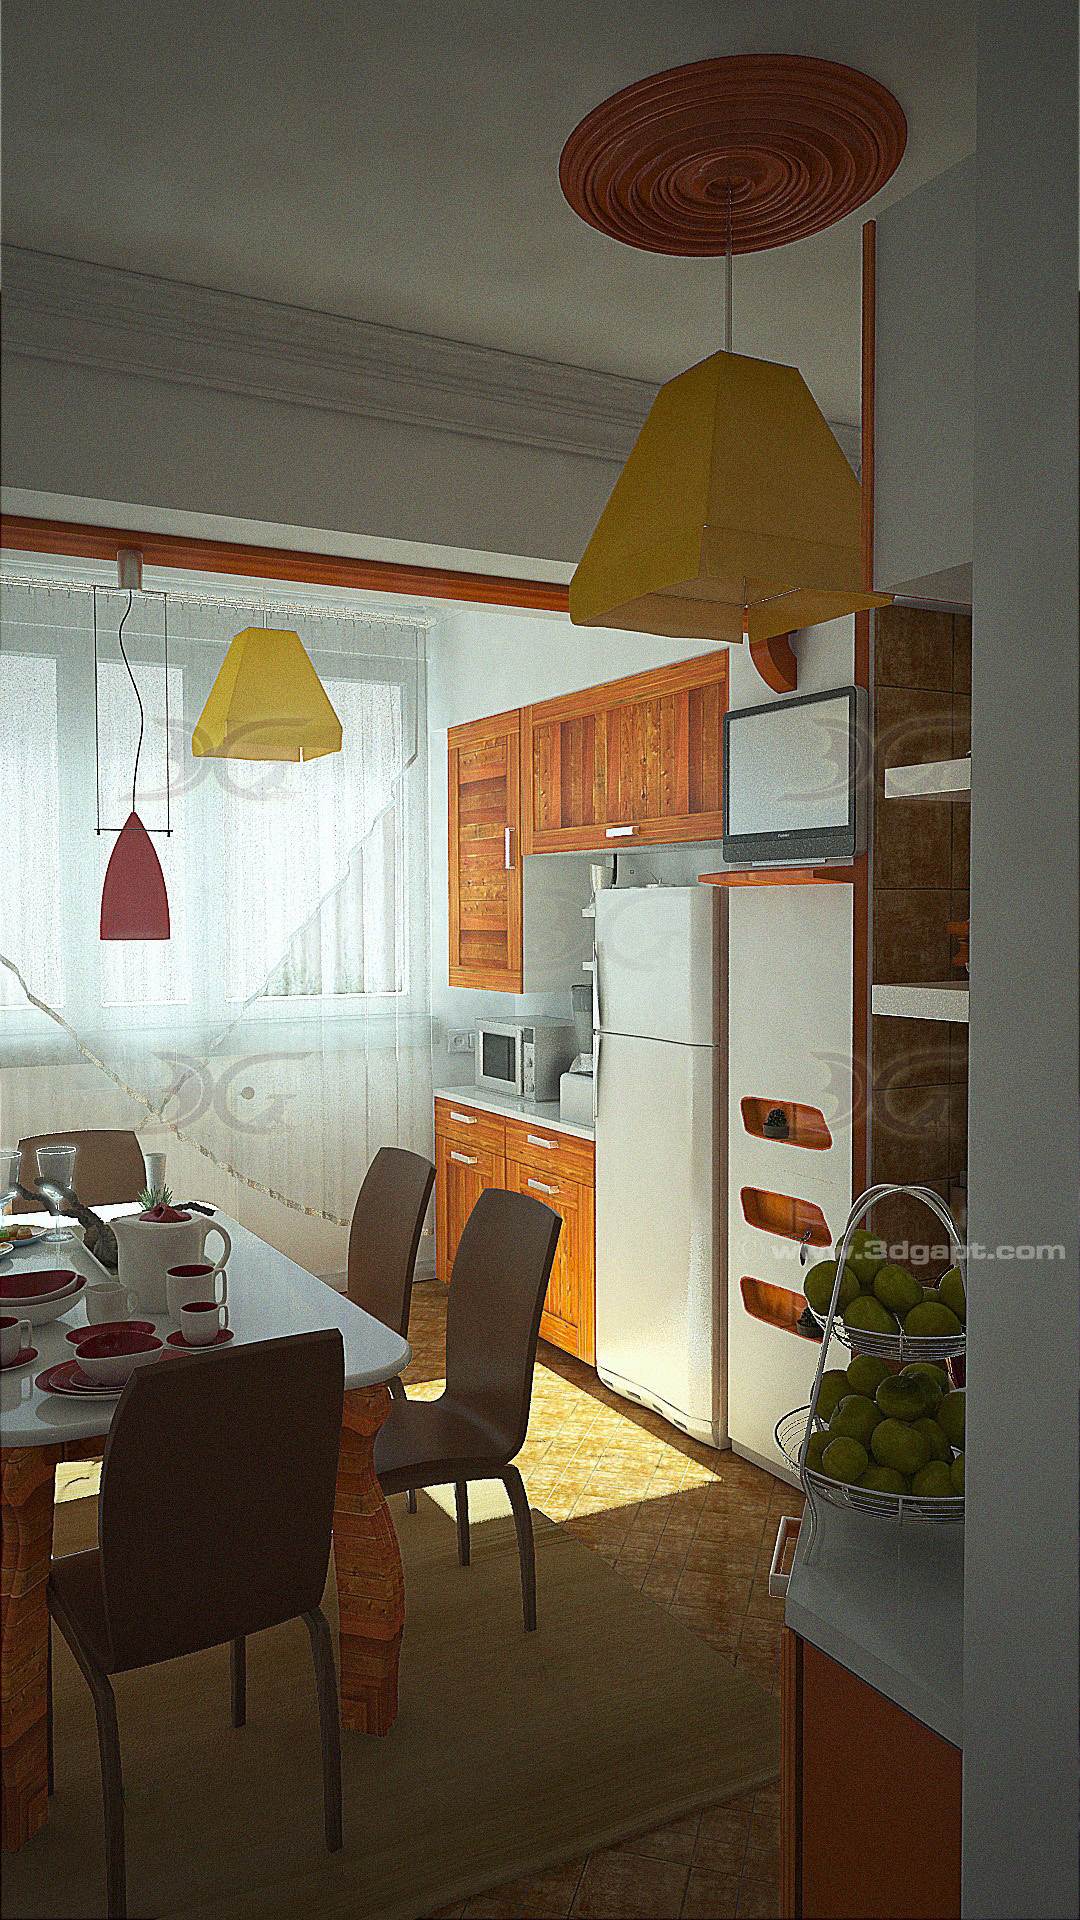 architecture interior kitchen-3versions 16